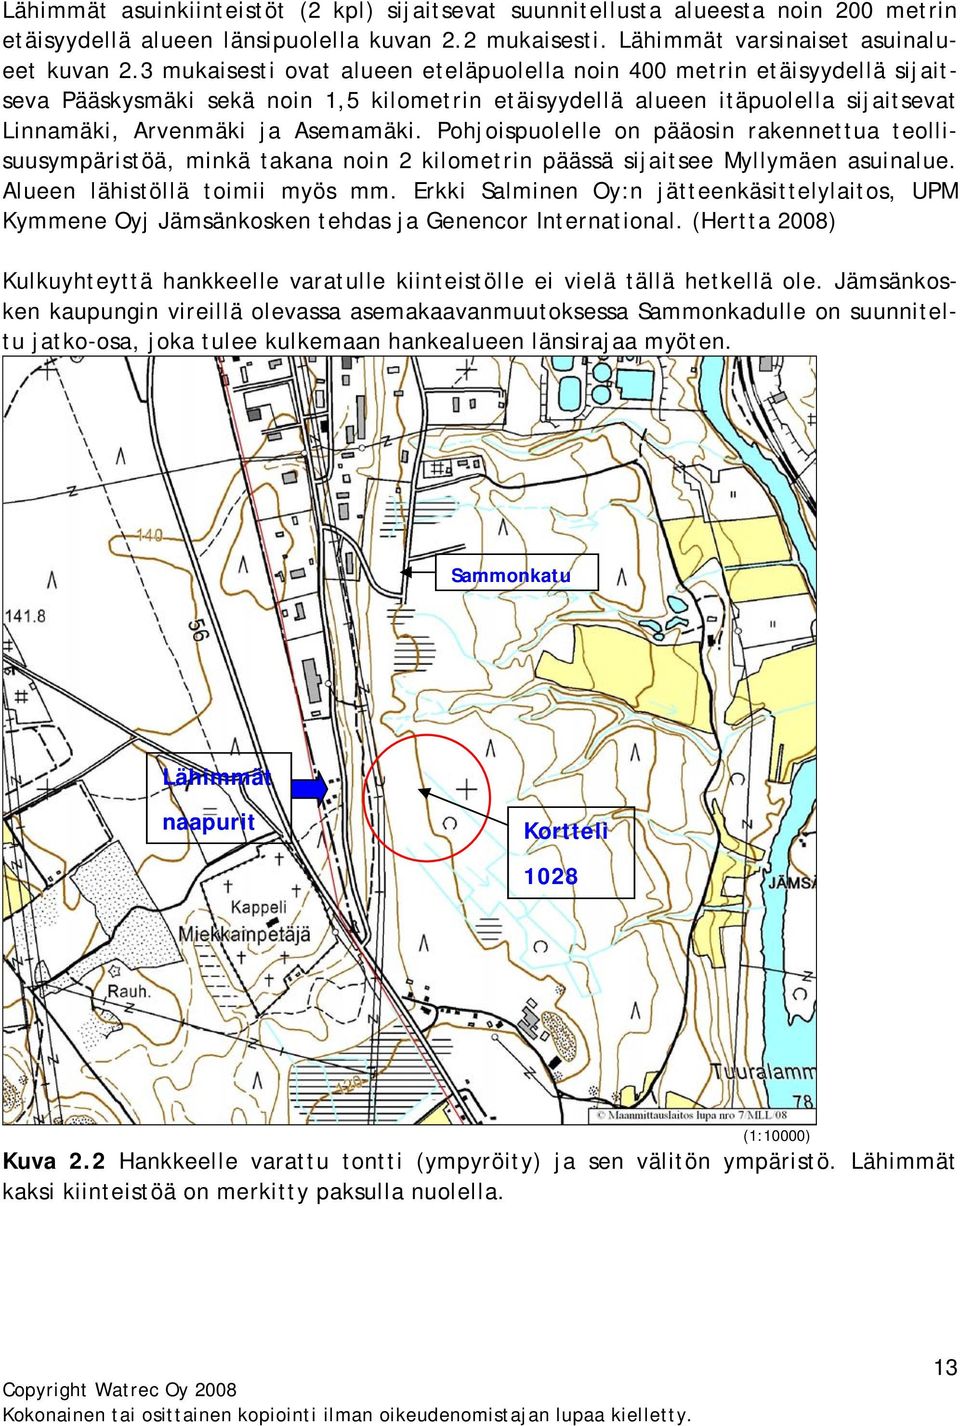 Pohjoispuolelle on pääosin rakennettua teollisuusympäristöä, minkä takana noin 2 kilometrin päässä sijaitsee Myllymäen asuinalue. Alueen lähistöllä toimii myös mm.